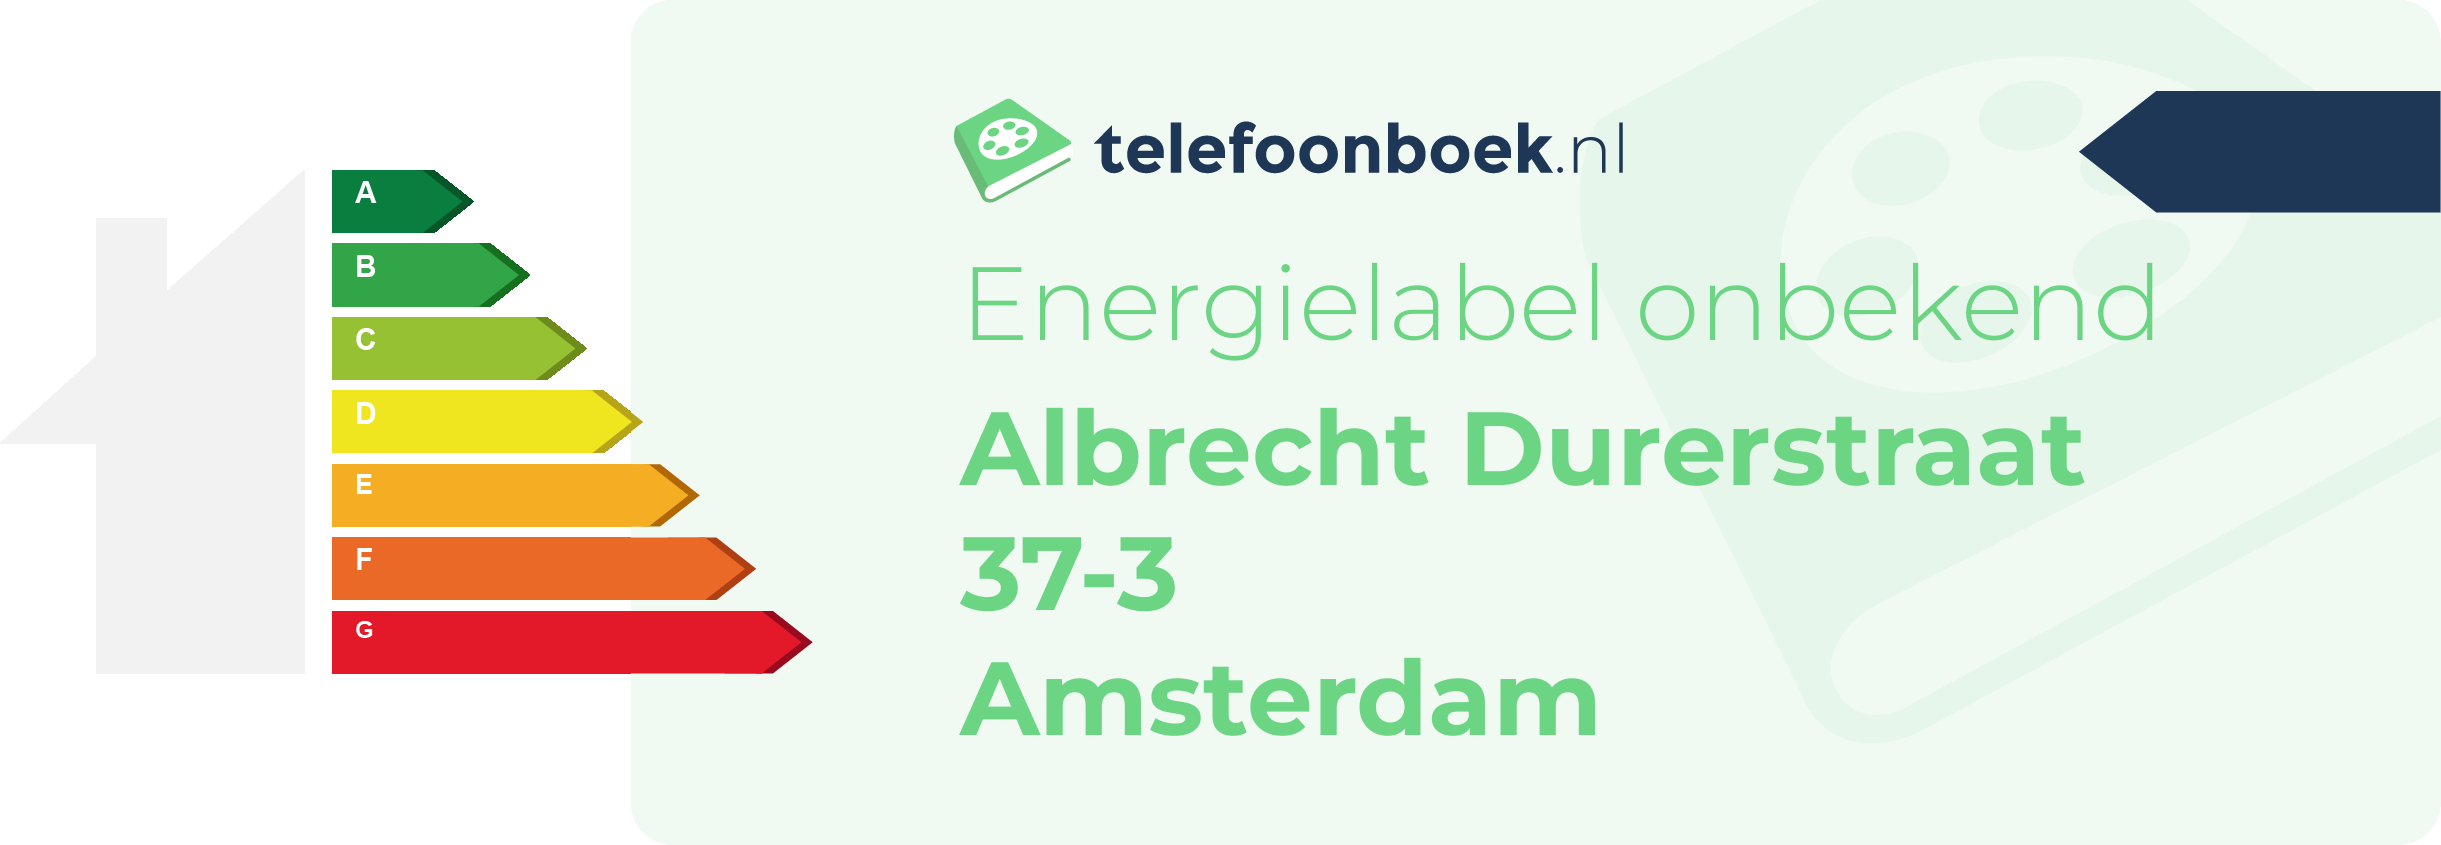 Energielabel Albrecht Durerstraat 37-3 Amsterdam